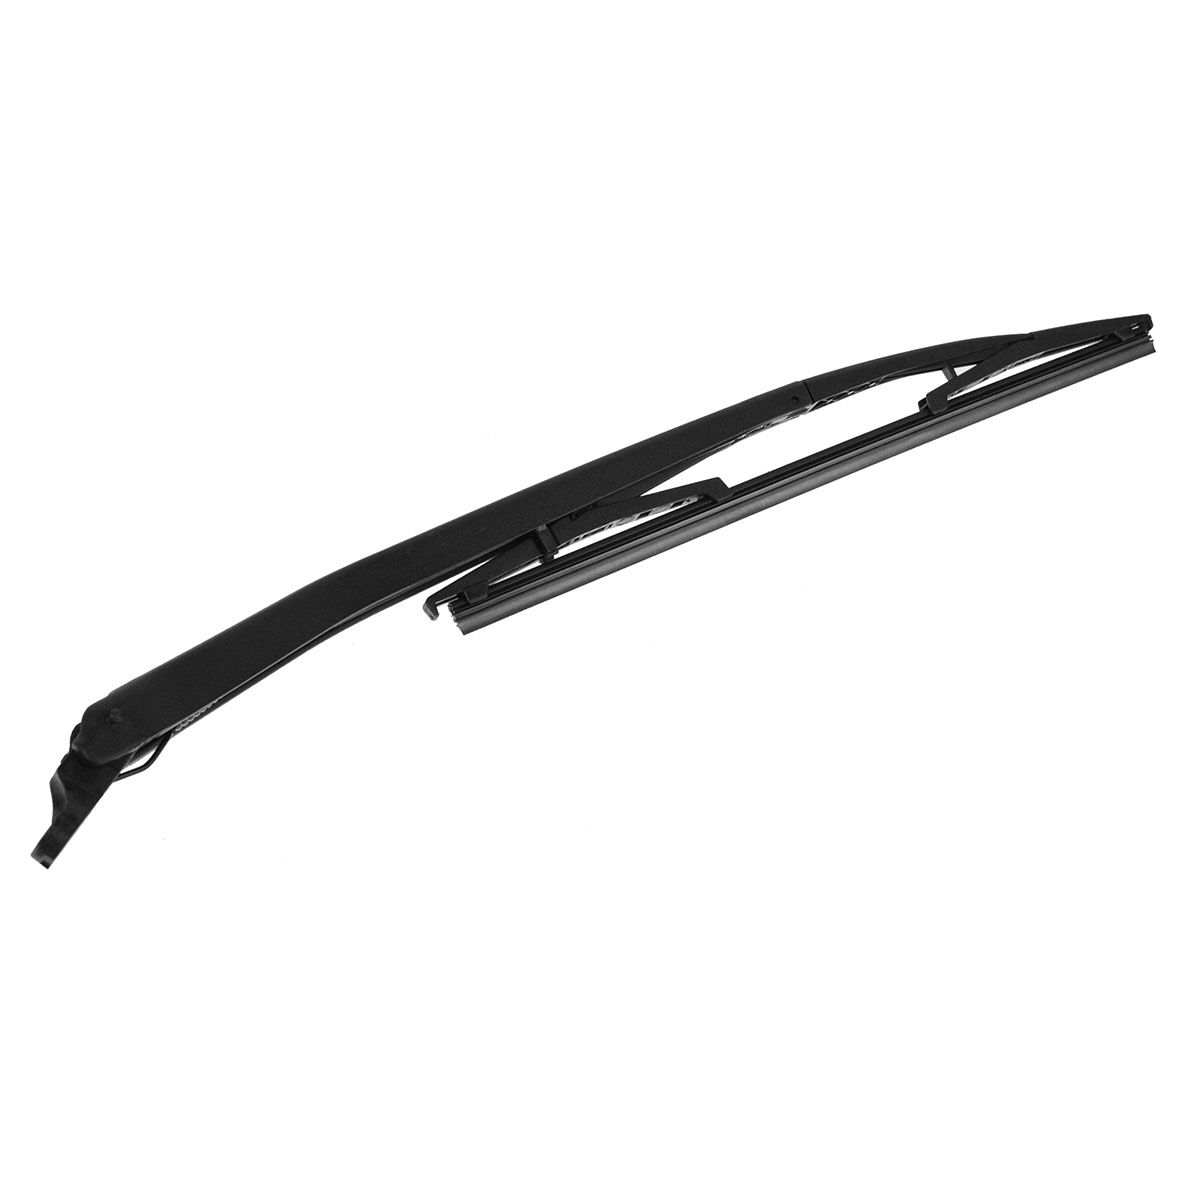 OEM Rear Wiper Arm & Blade for 04-07 Chevy Malibu Maxx NEW | eBay 2005 Chevy Malibu Maxx Rear Wiper Blade